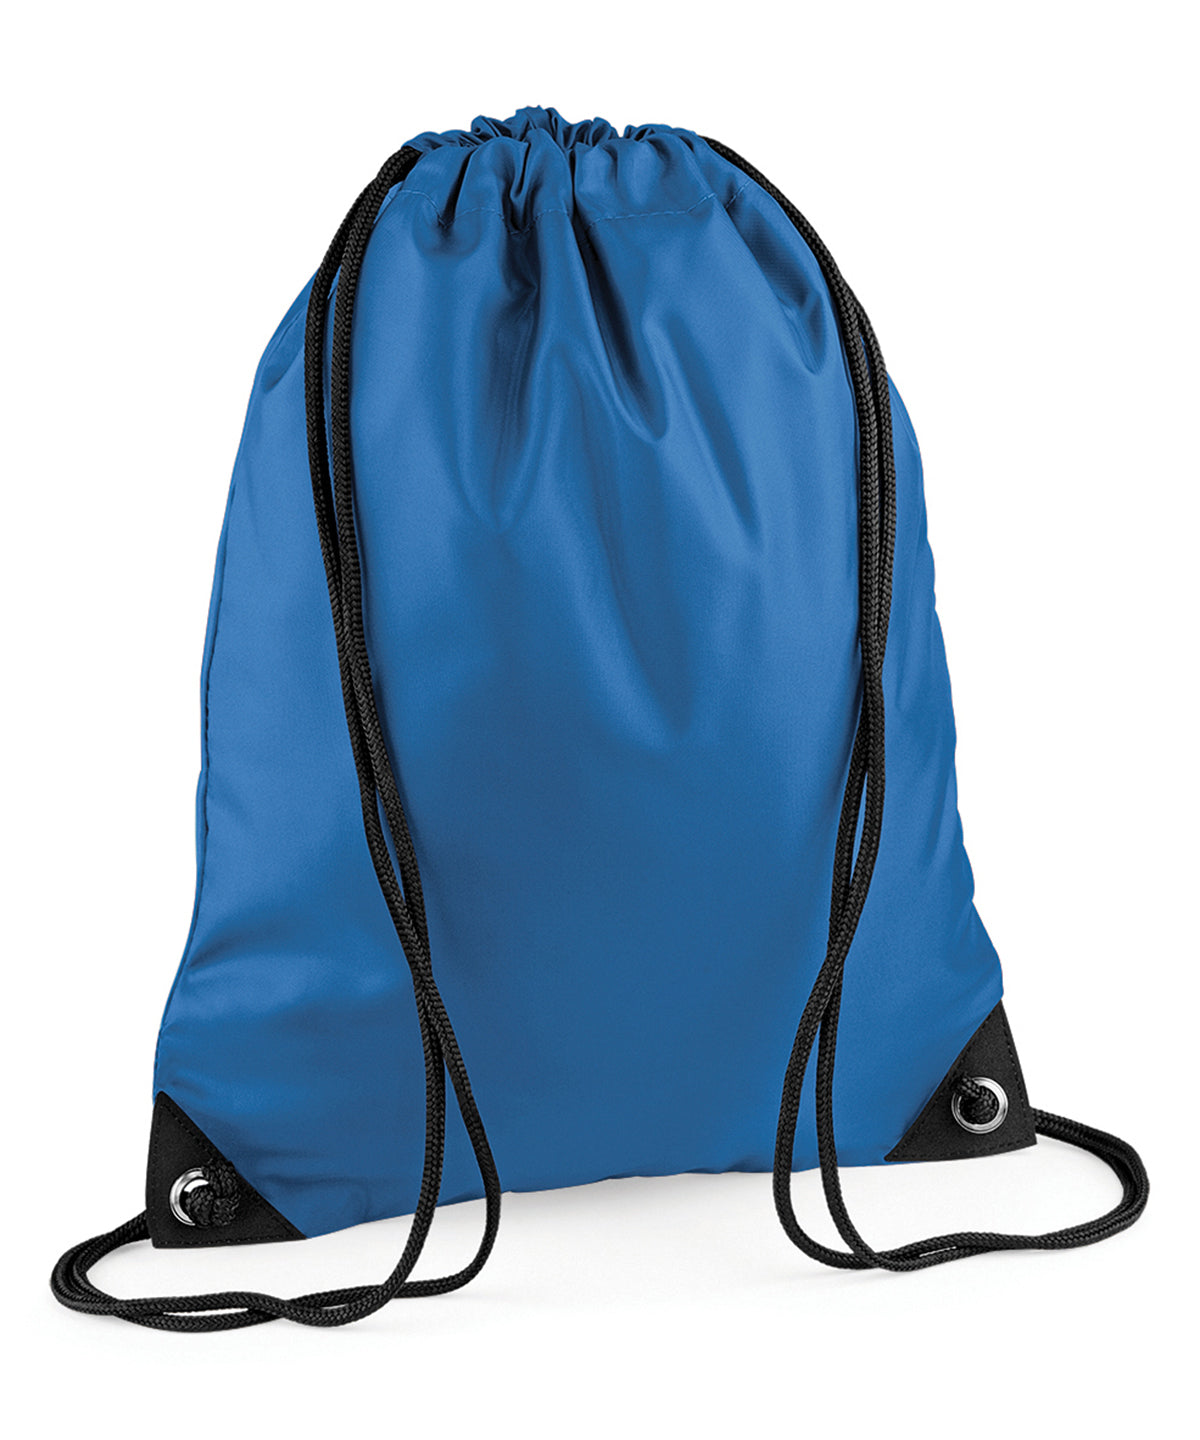 Personalised Bags - Sapphire Bagbase Premium gymsac